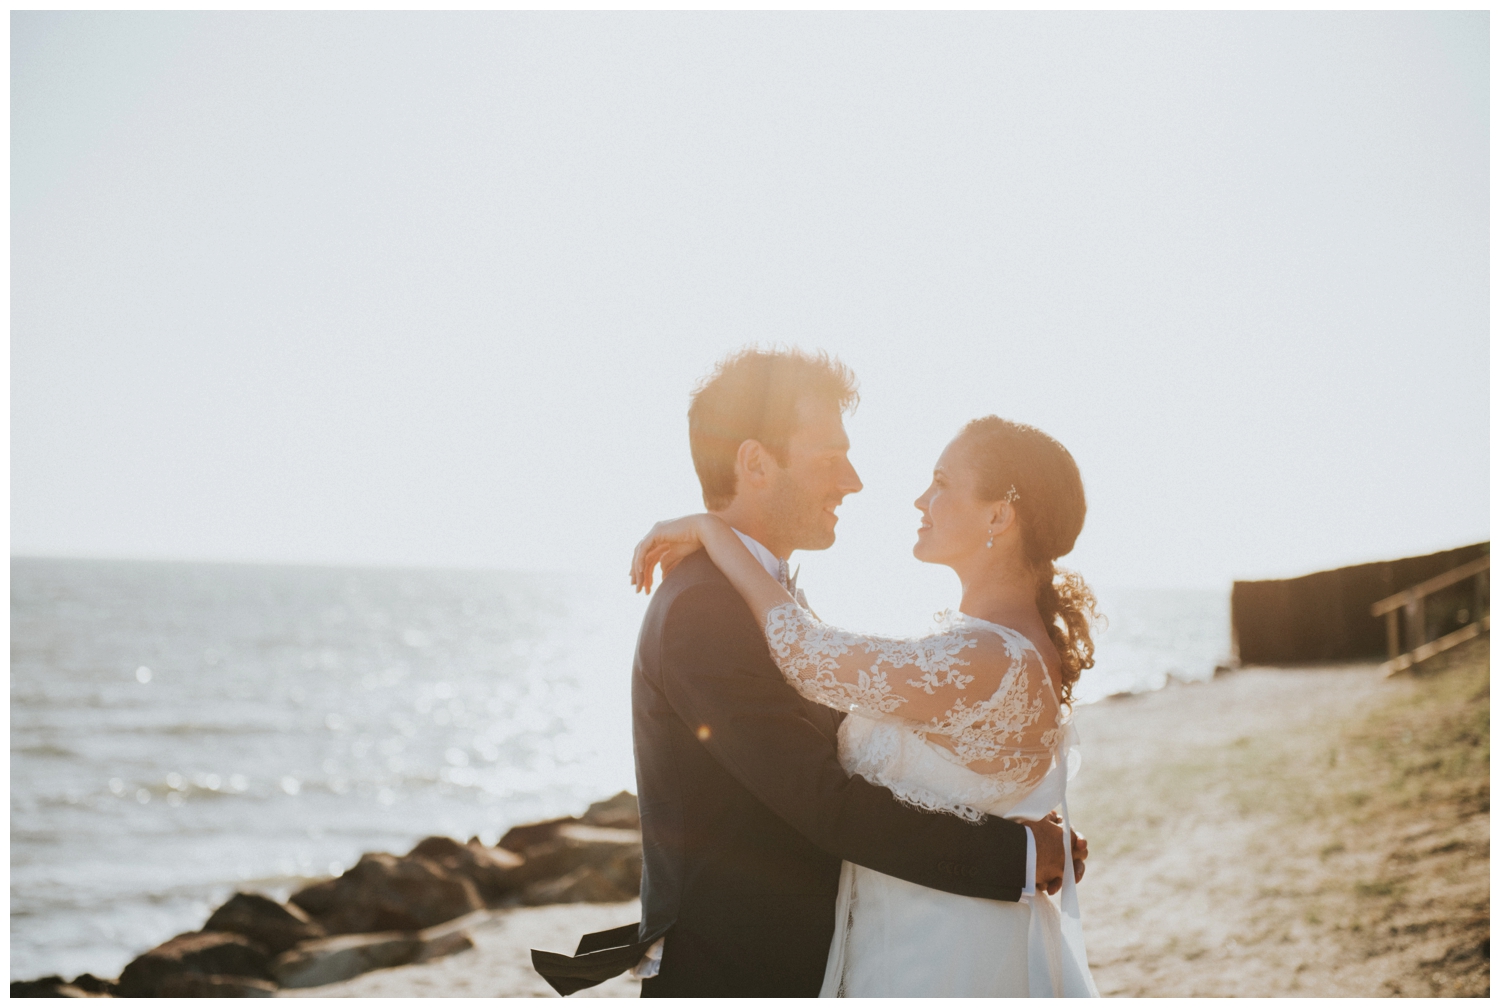 photographe-mariage-ile-noirmoutier-vendee-nantes-ceremonie-laique-ocean_0085